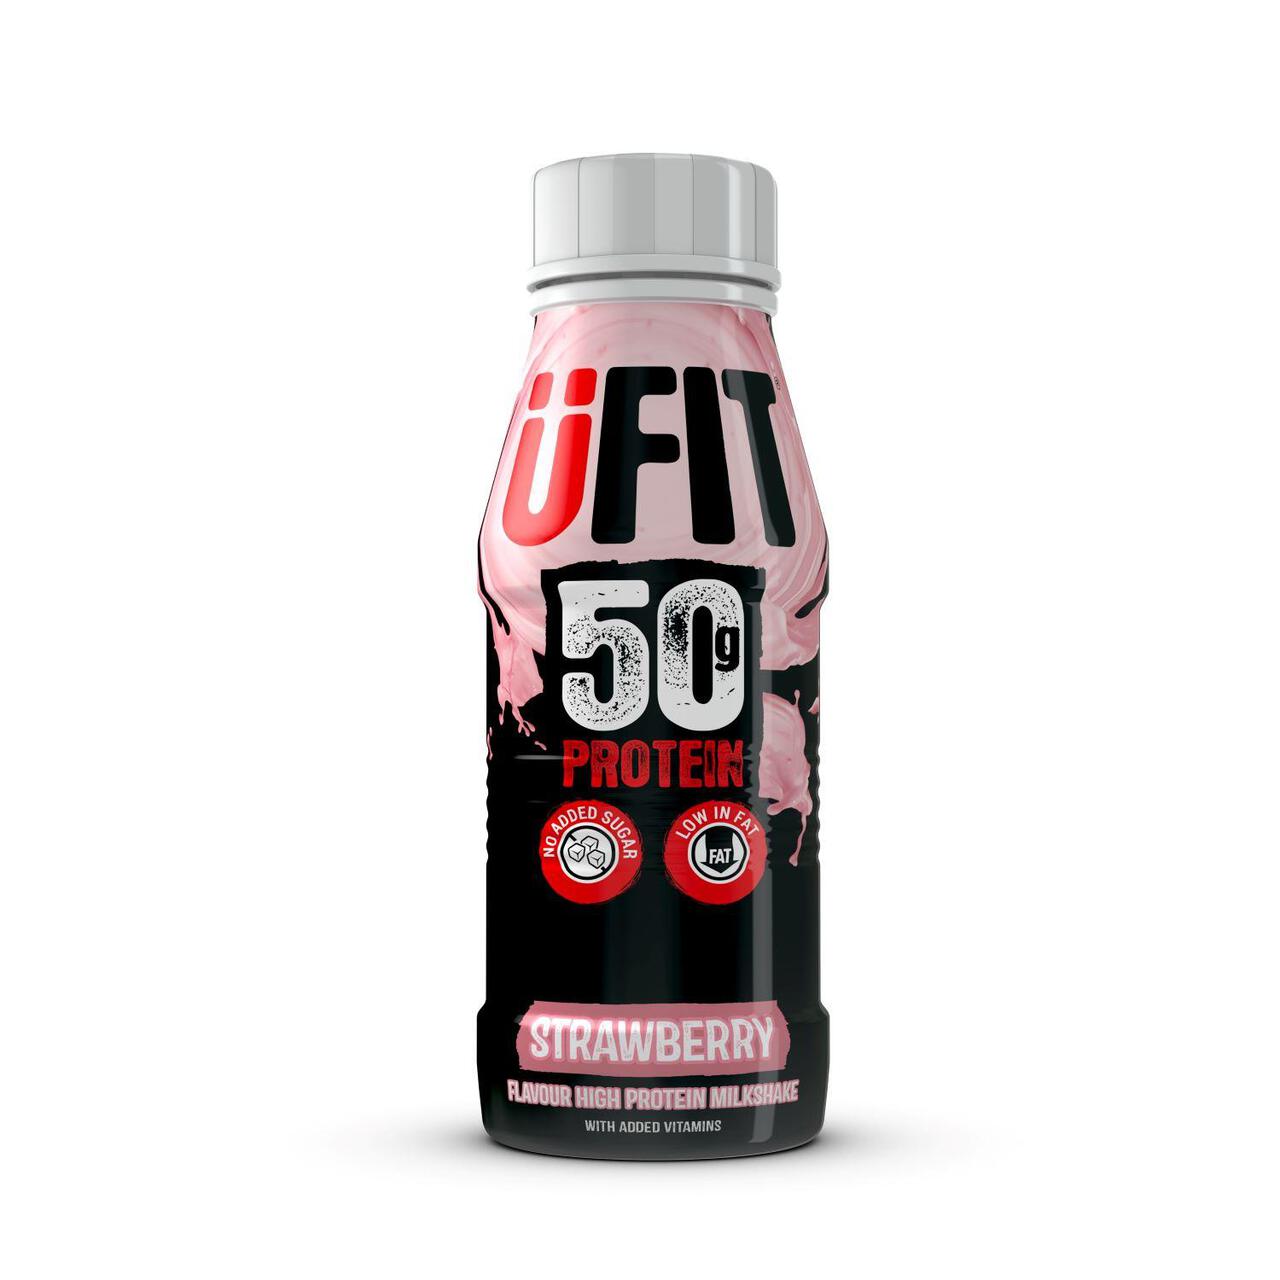 UFIT Strawberry 50g Protein Milkshake 500ml